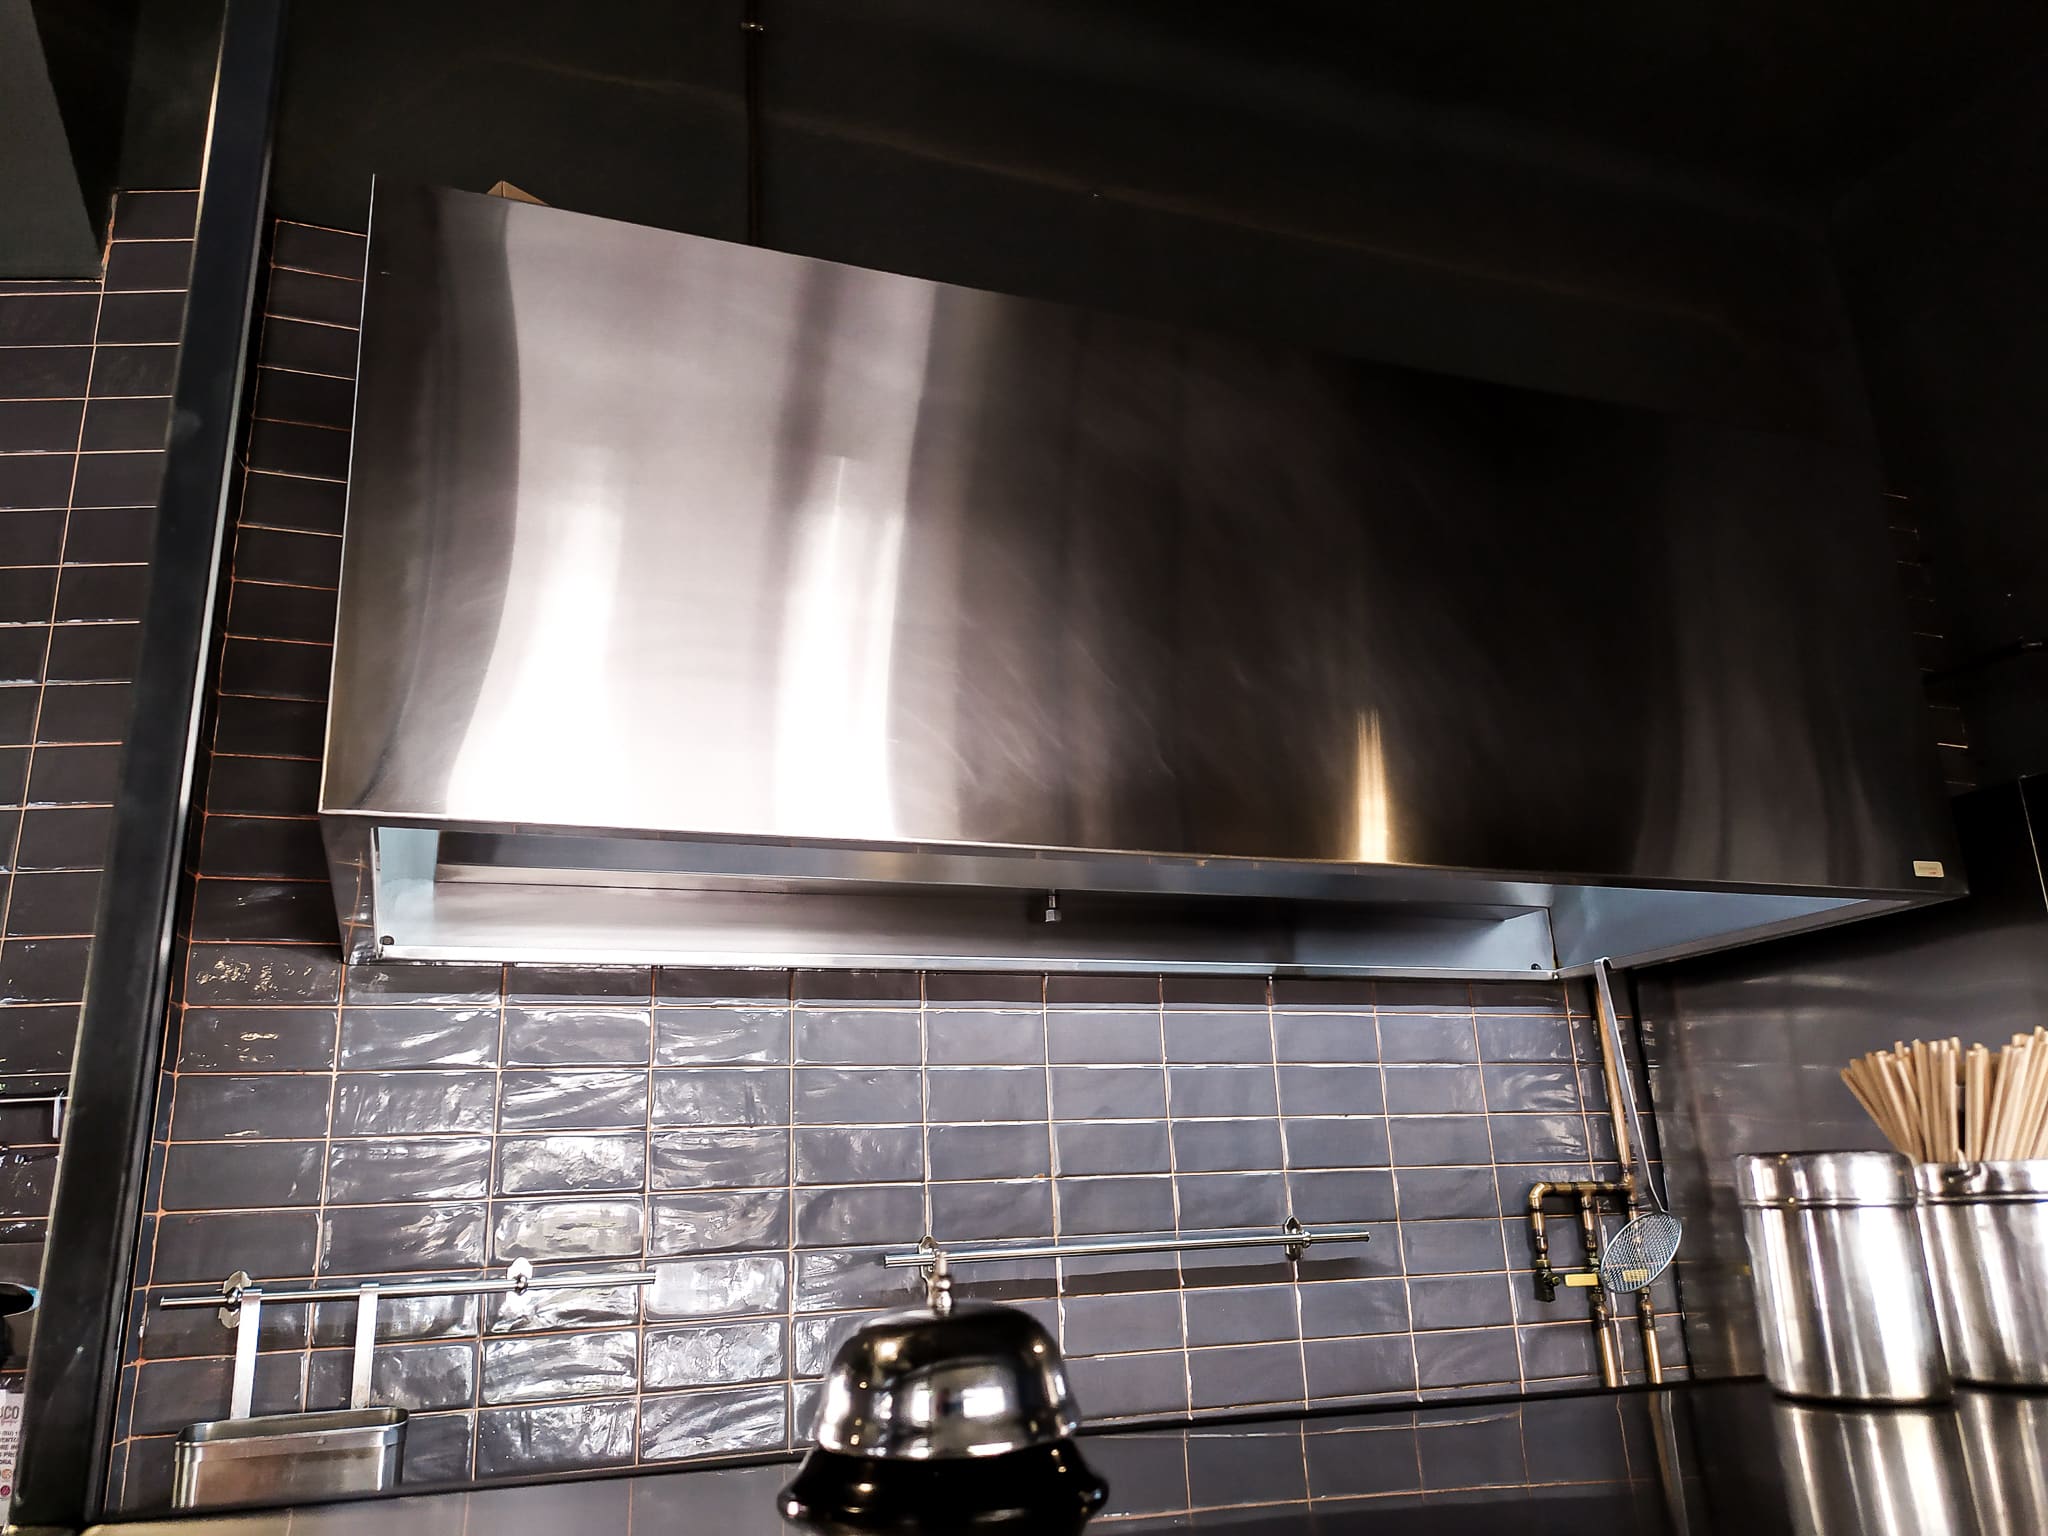 Importancia de la cocina industrial en acero inoxidable